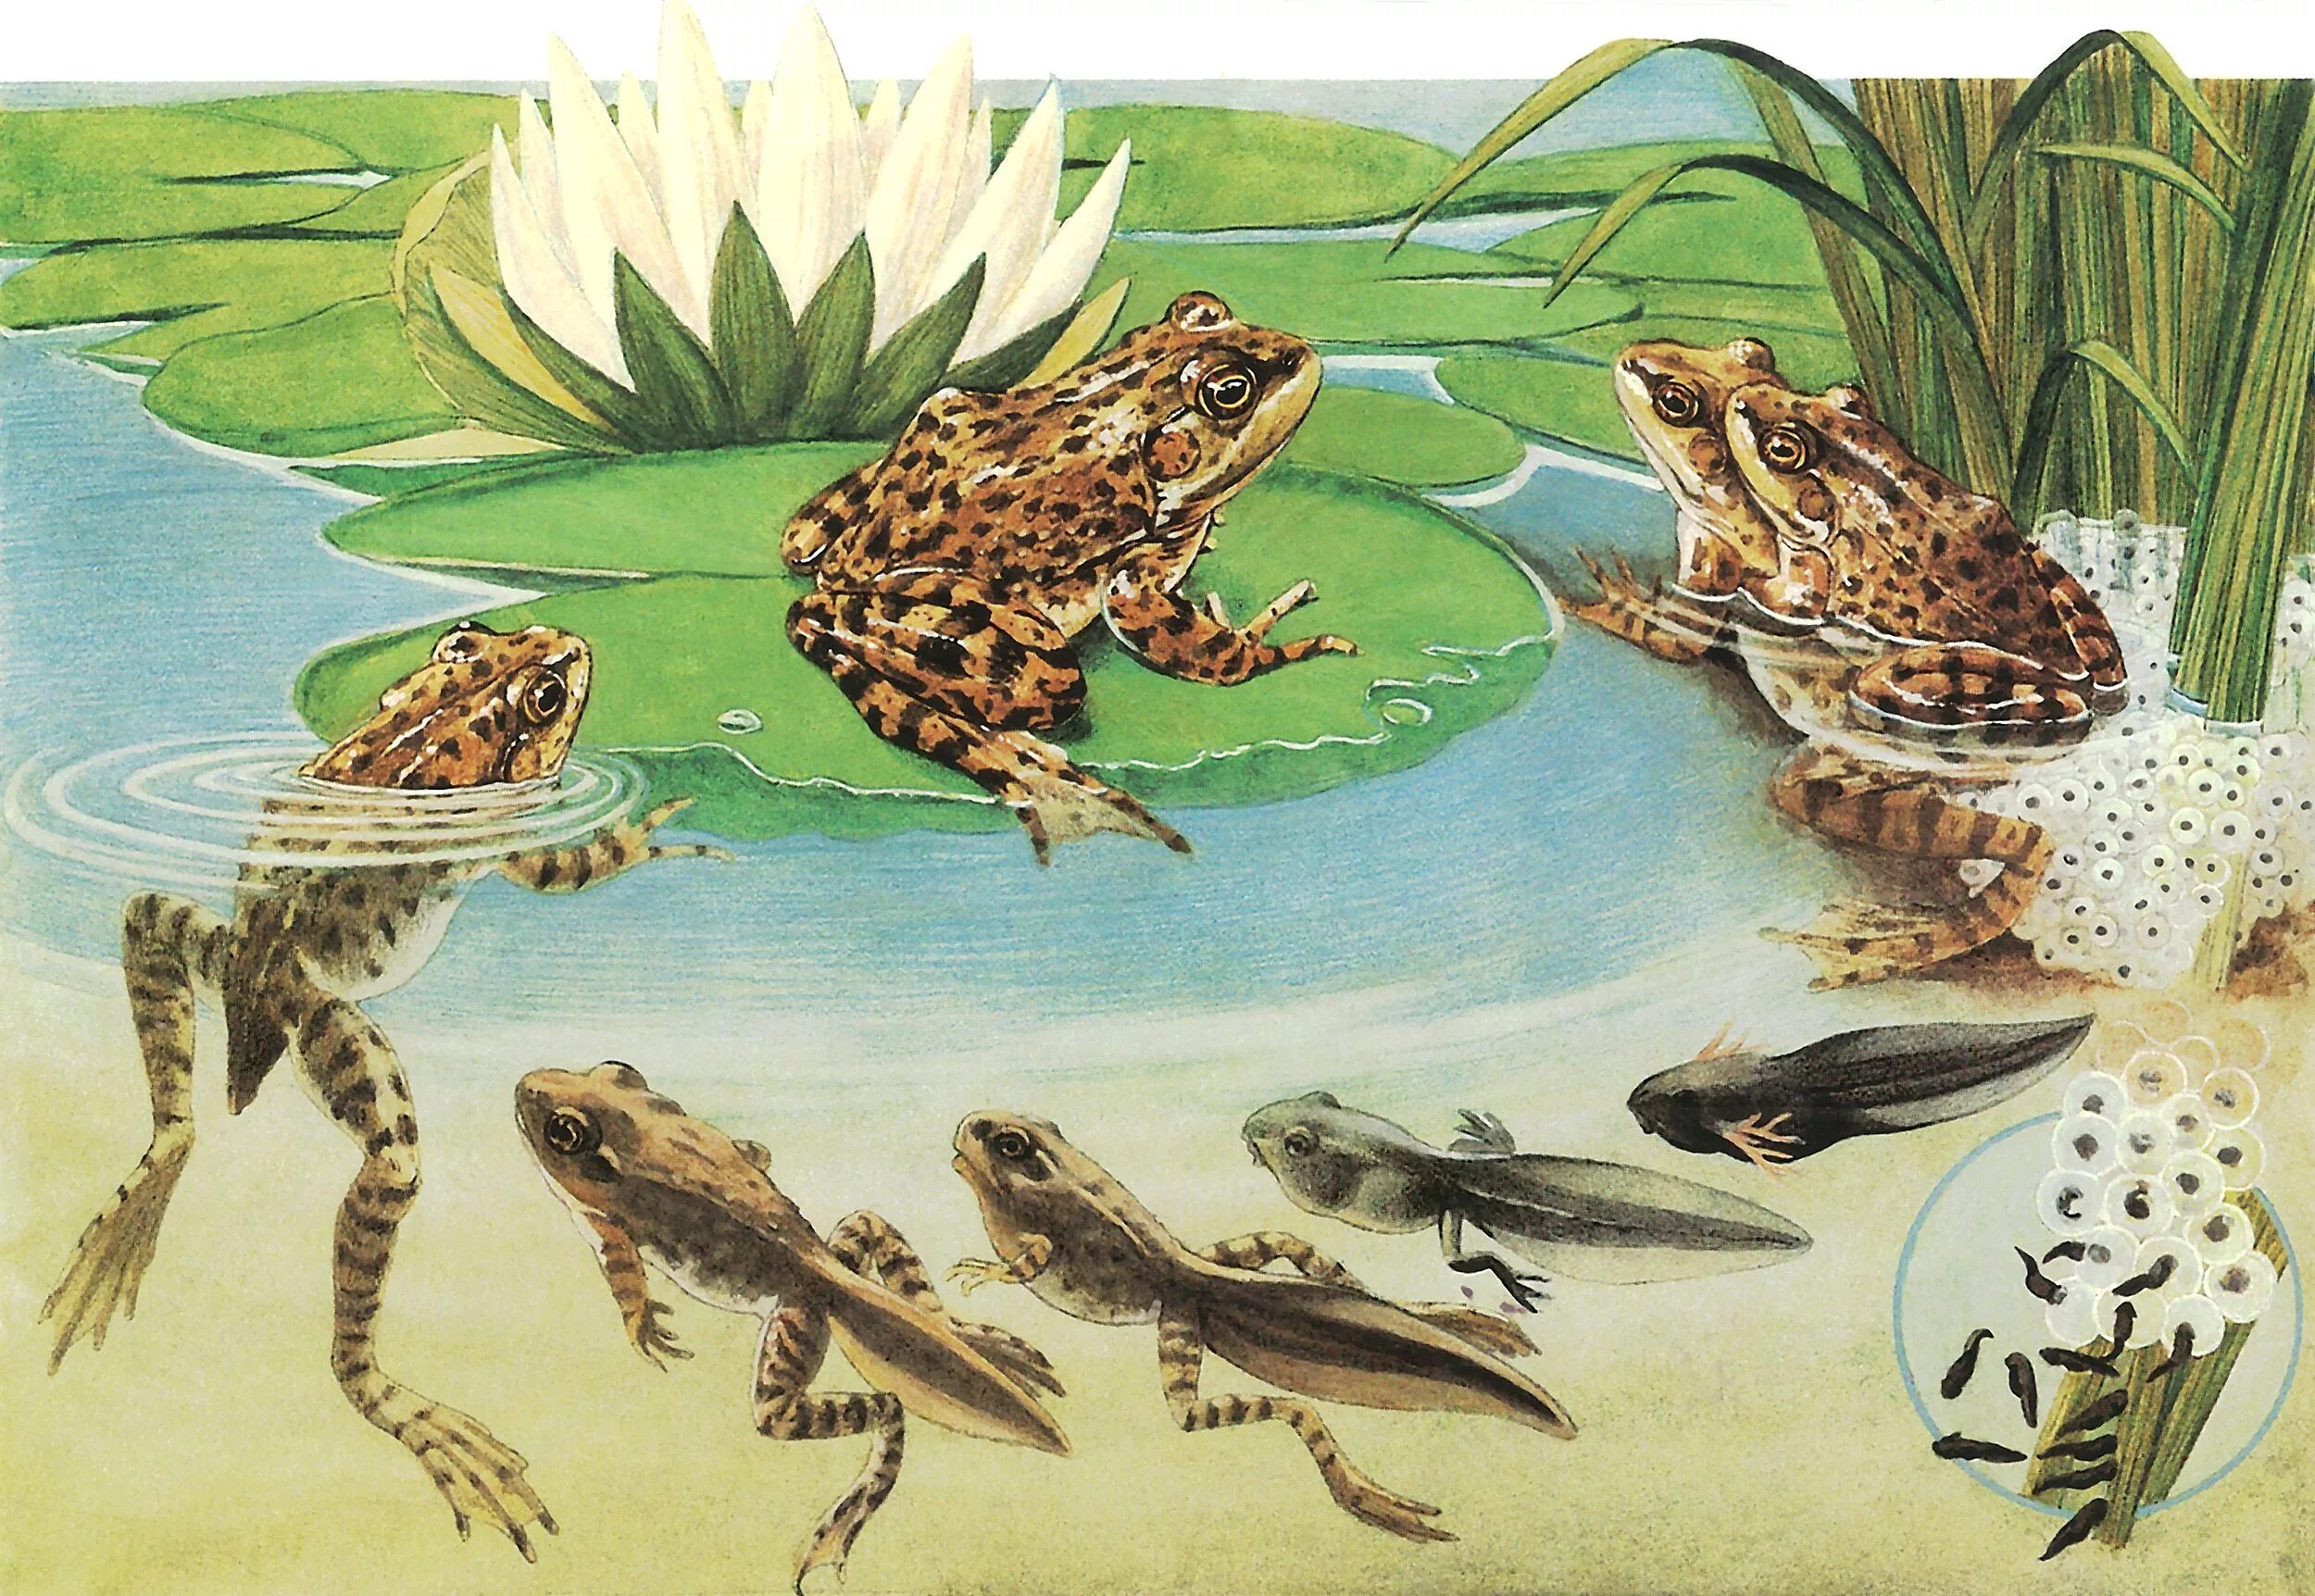 Жизнь в воде эволюция. Стадии развития головастика лягушки. Превращение головастика в лягушку. Жизненный цикл развития лягушки. Травяная лягушка жизненный цикл.